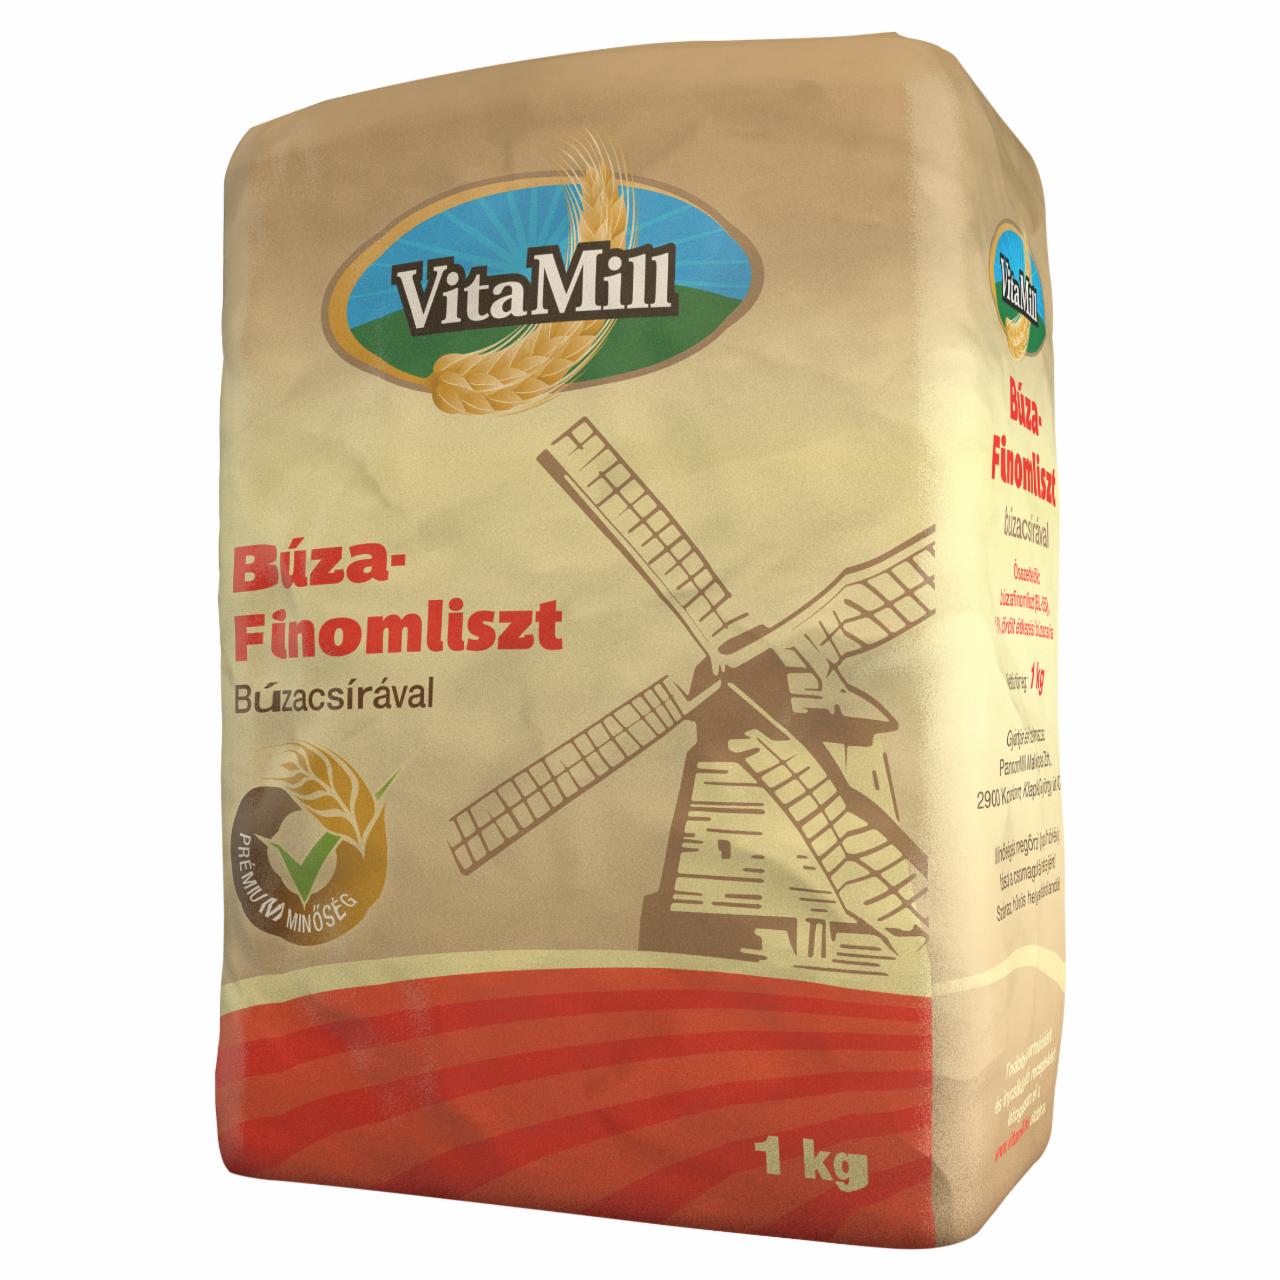 Képek - VitaMill búza finomliszt búzacsírával 1 kg